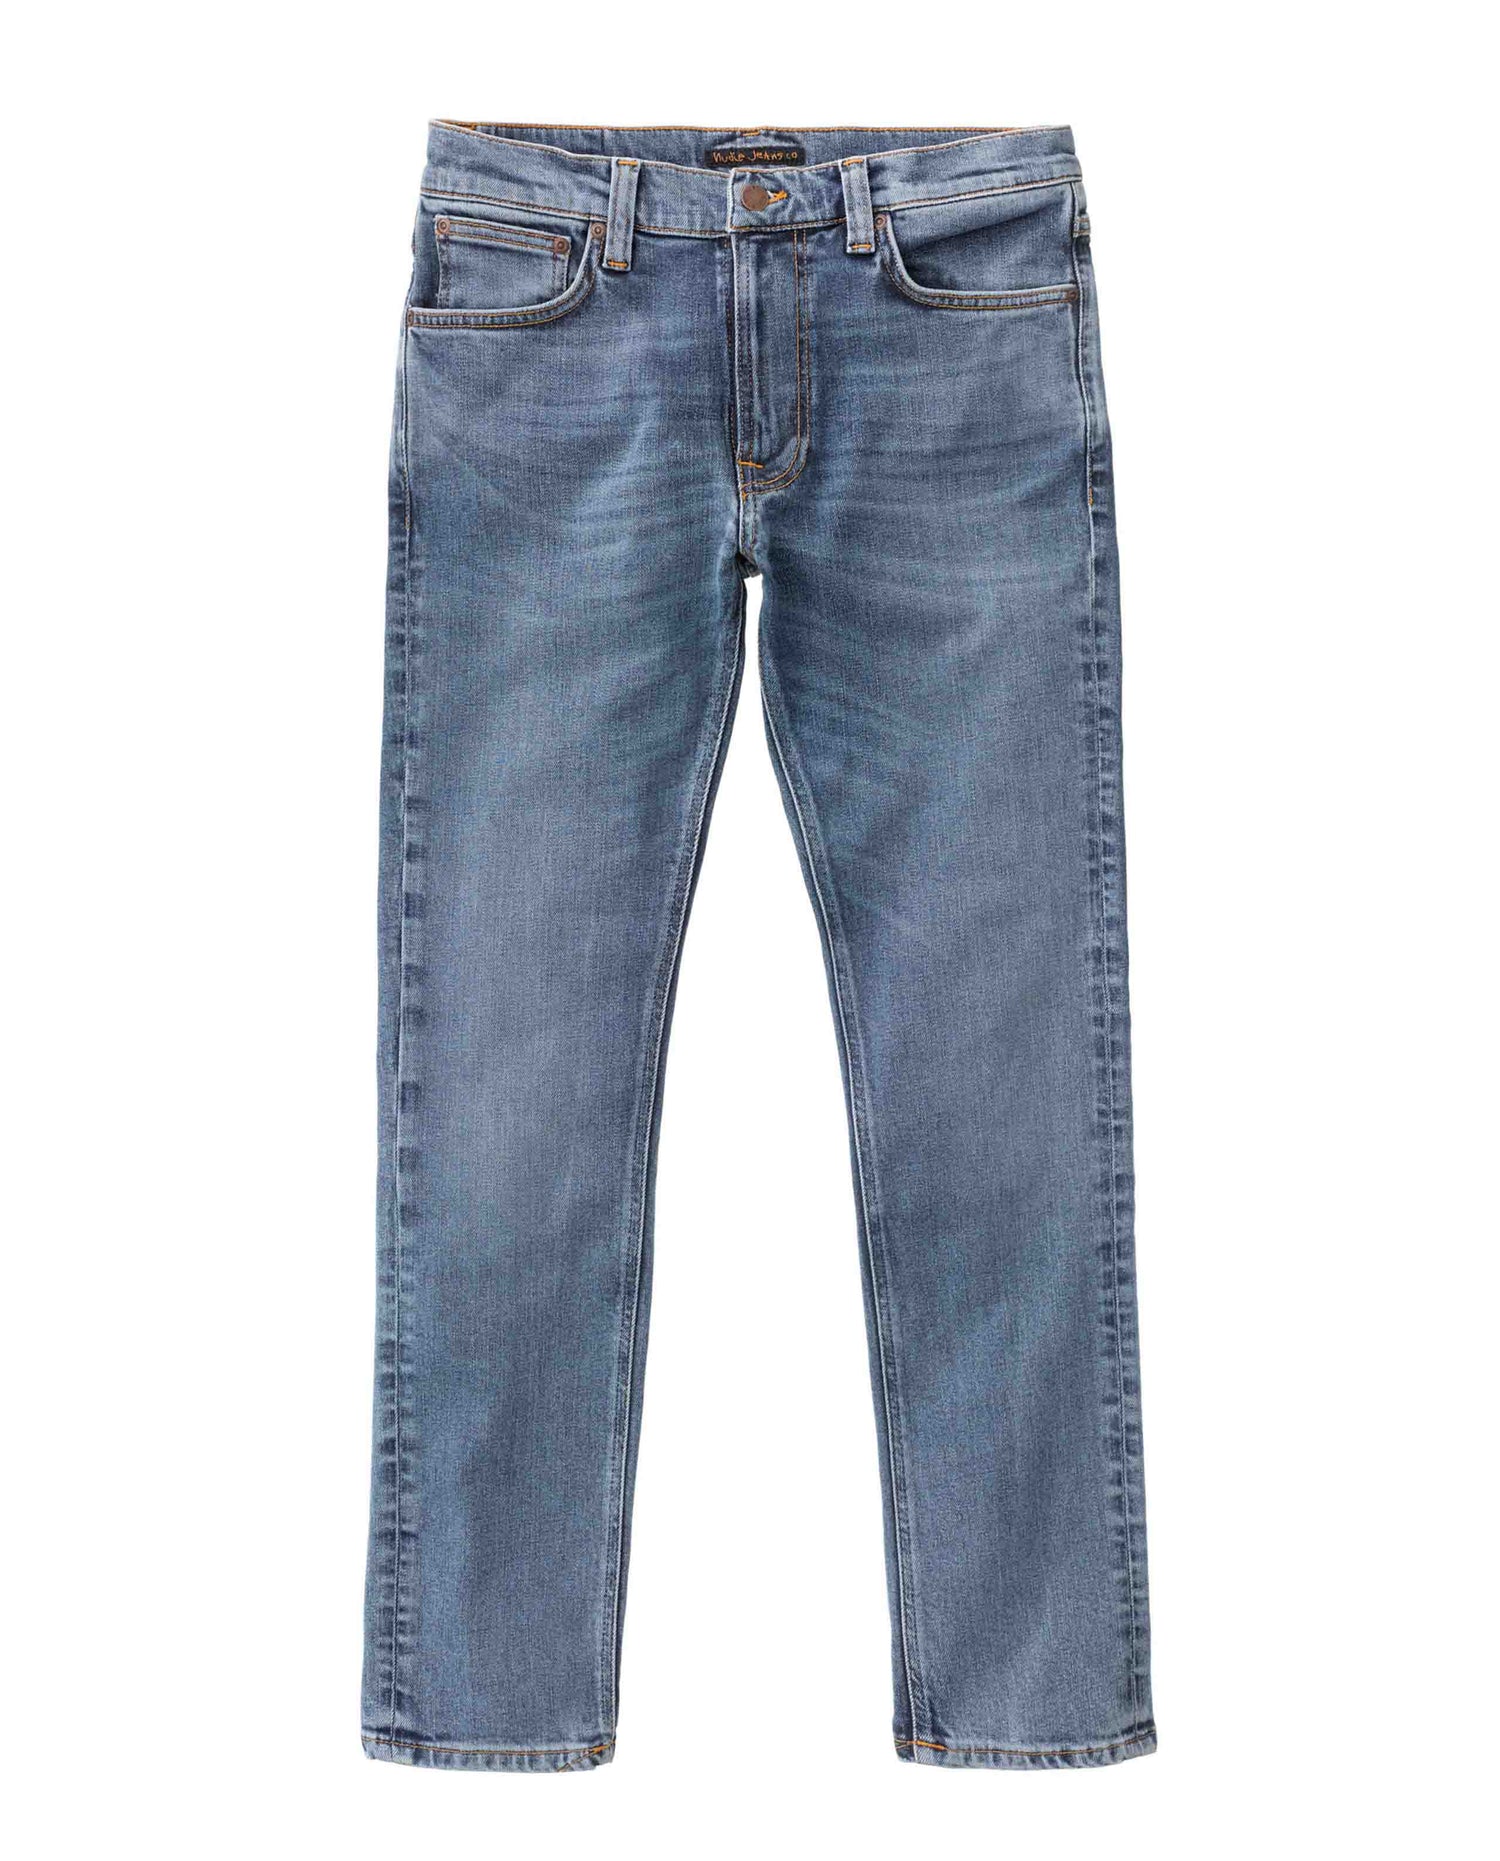 marché commun nudie jeans homme denim coton biologique lean dean lost orange